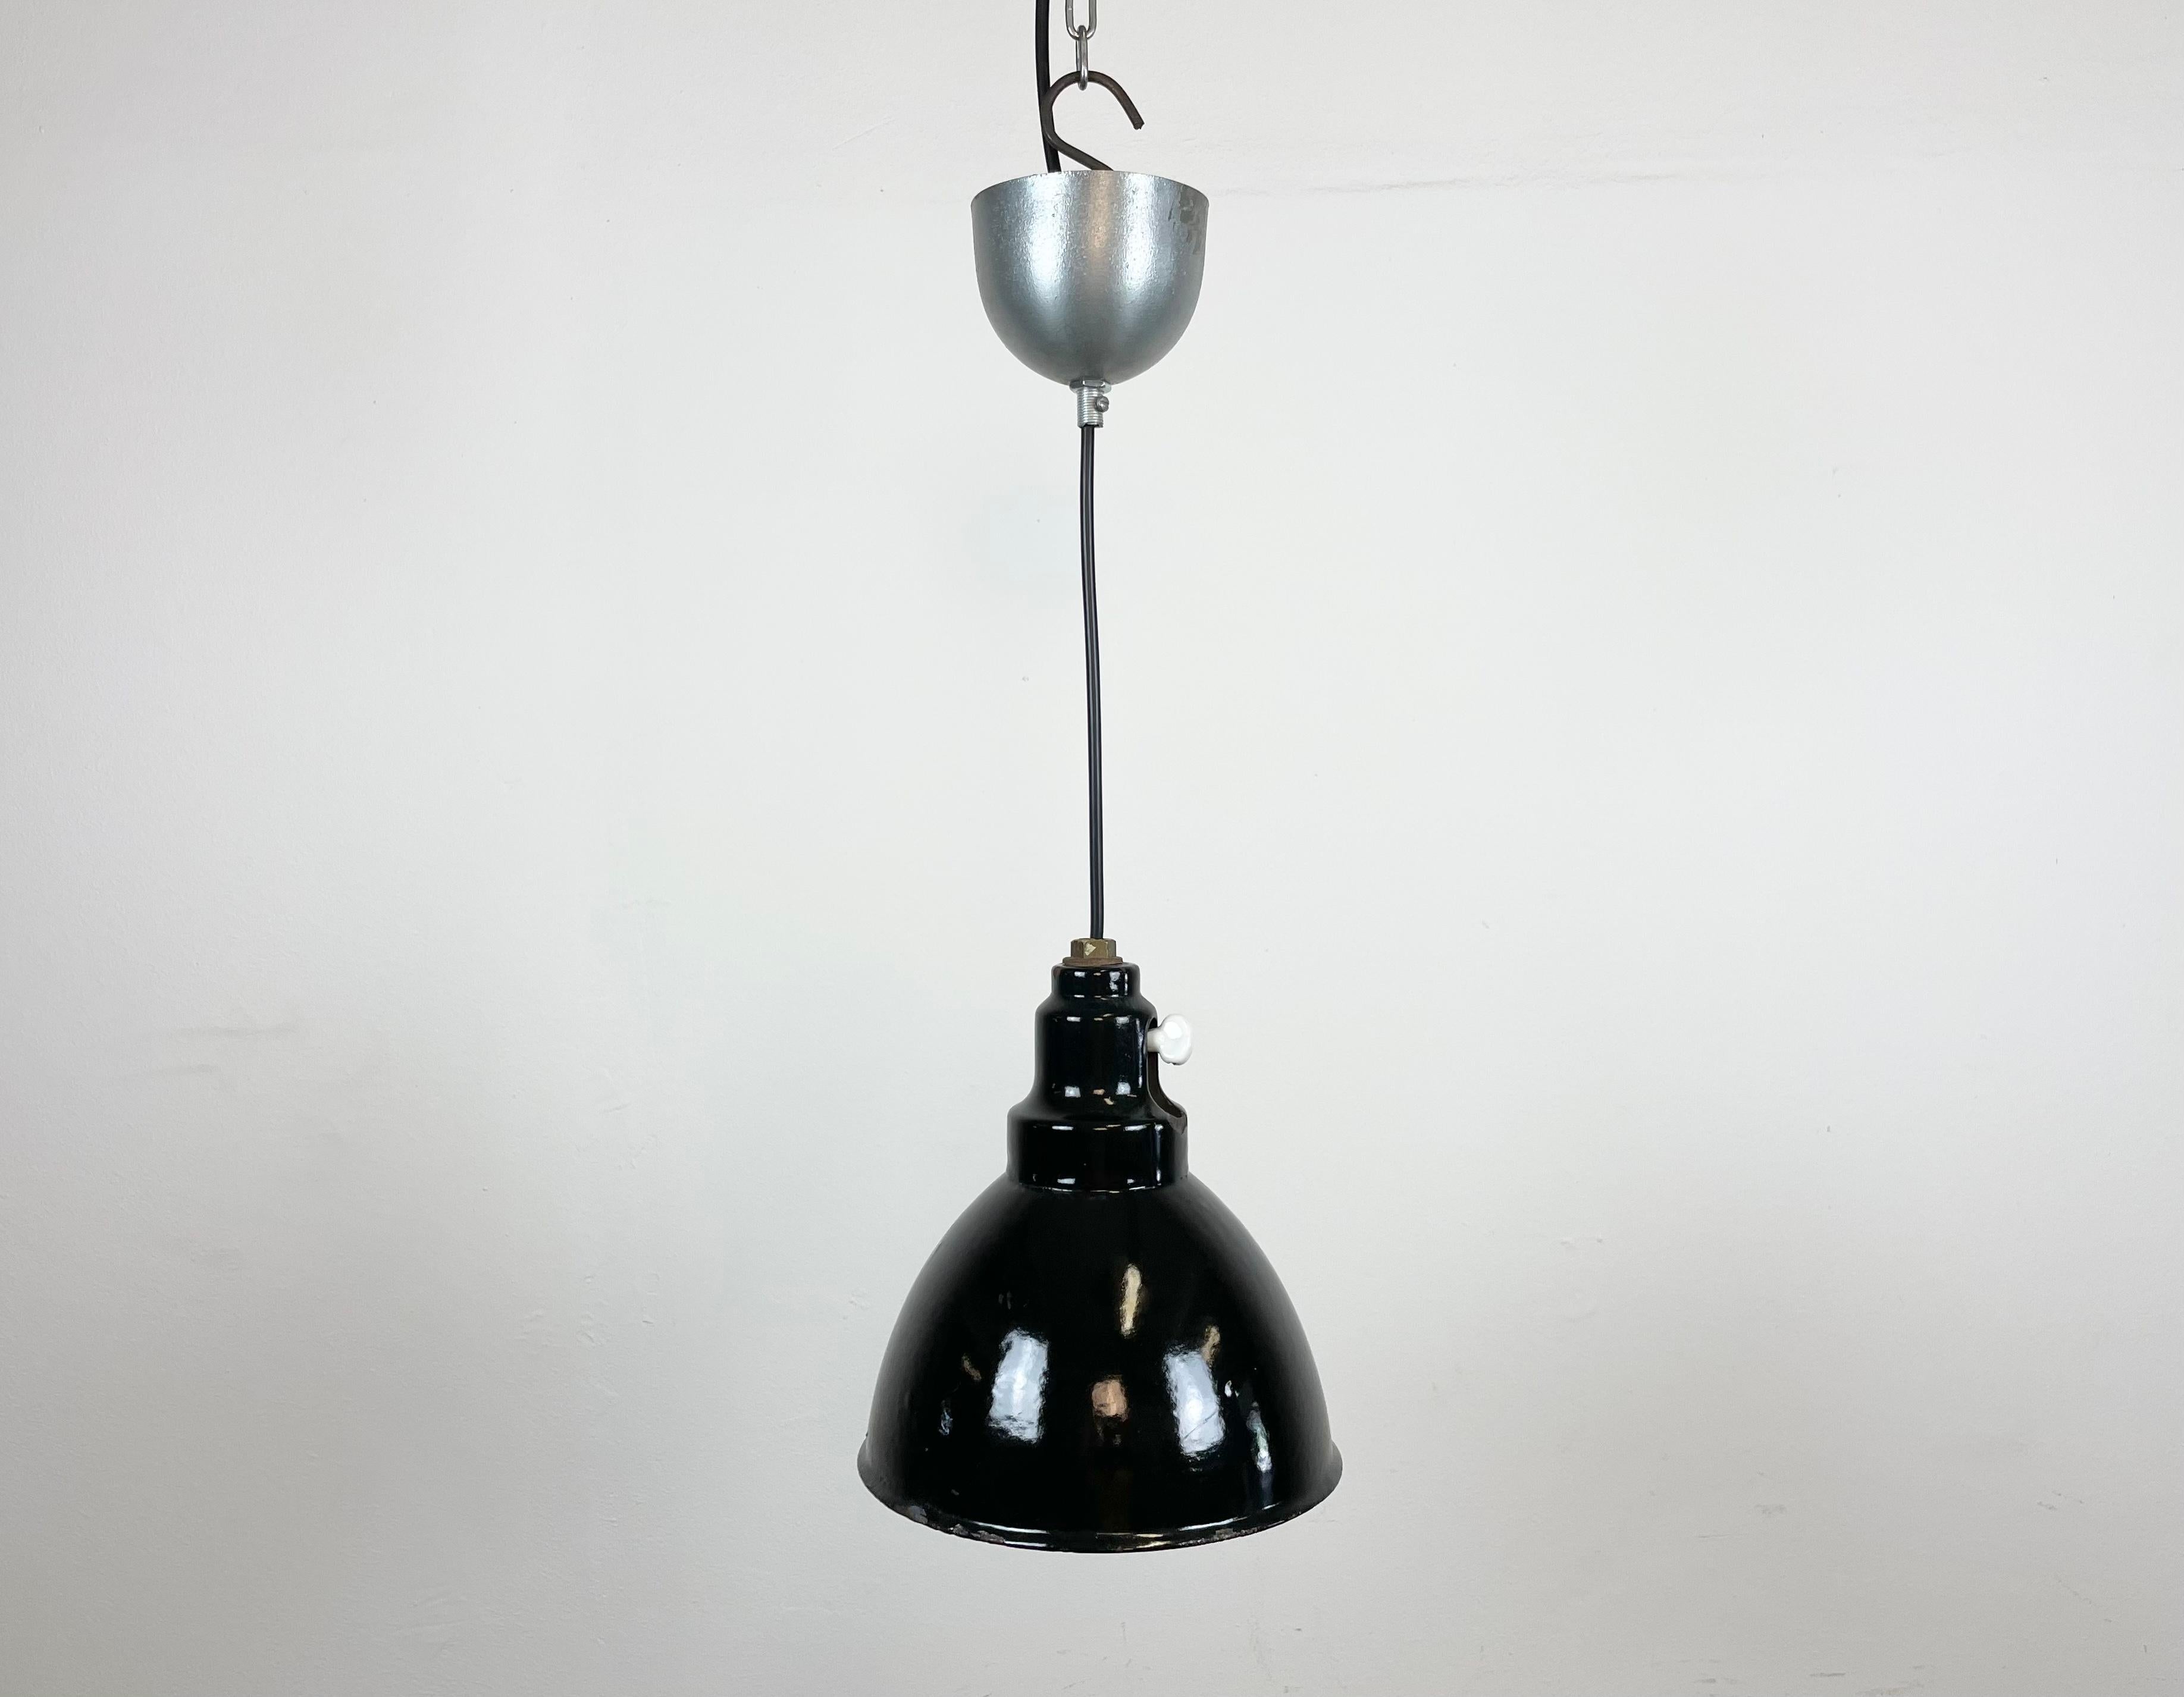 Lampe pendante industrielle en émail noir fabriquée dans l'ancienne Tchécoslovaquie dans les années 1950. Émail blanc à l'intérieur de la teinte. Verrière en métal. La douille originale avec interrupteur nécessite des ampoules E 27/ E 26. Un nouveau